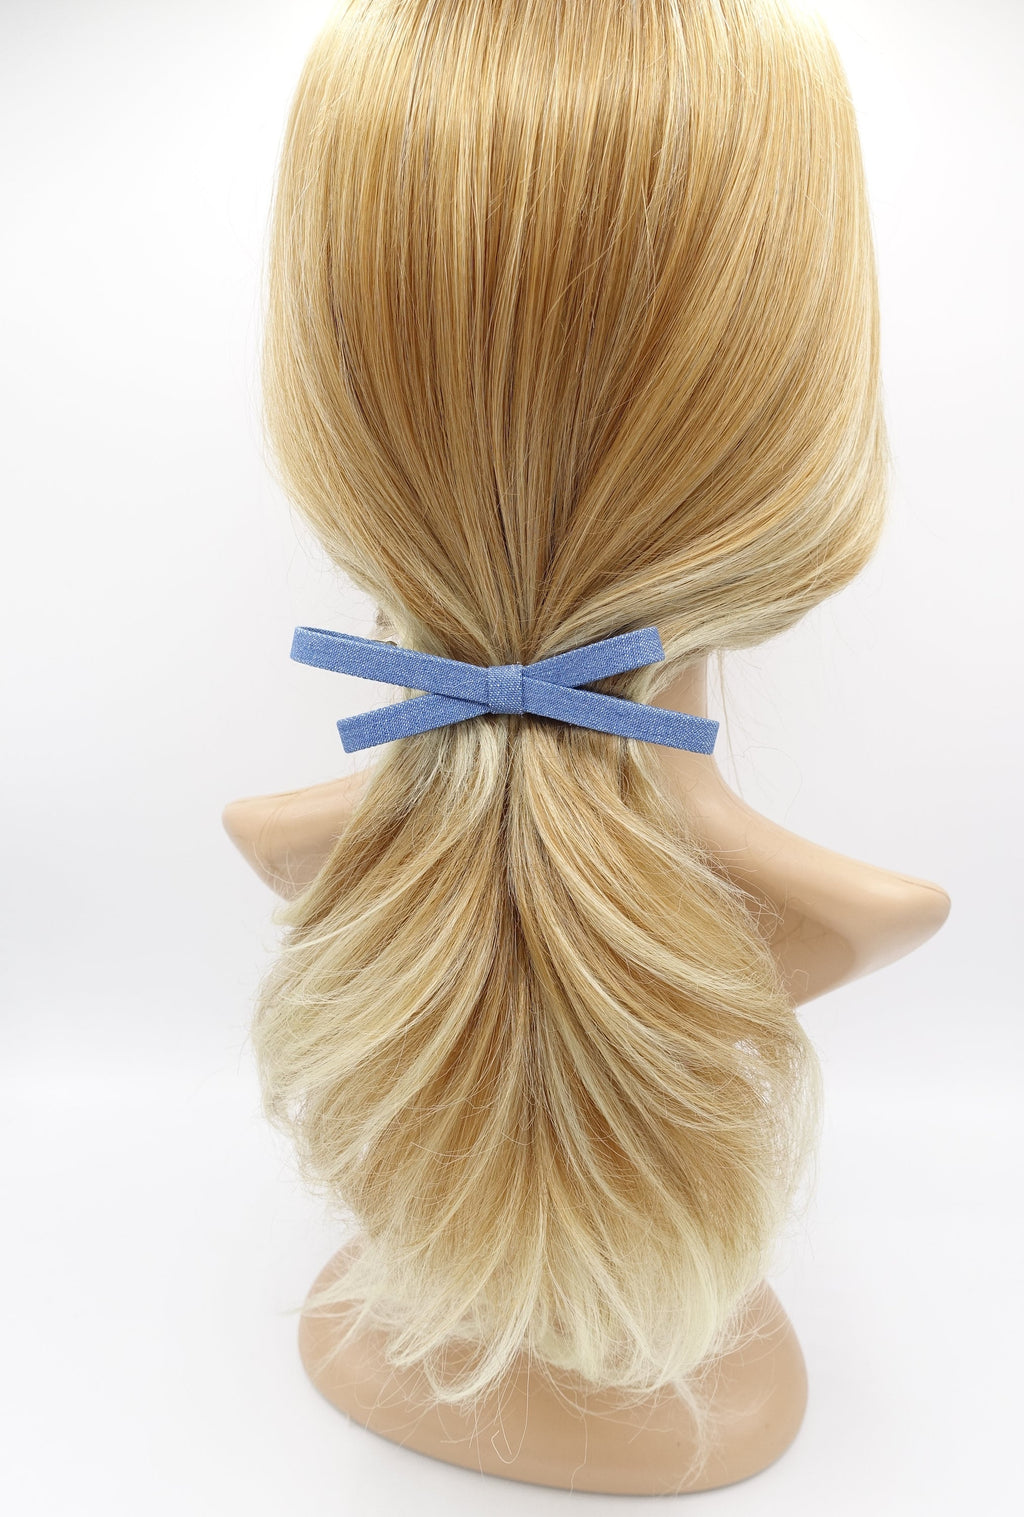 veryshine.com Barrette (Bow) Blue narrow denim bow barrette, casual hair barrette, daily hair bow for women